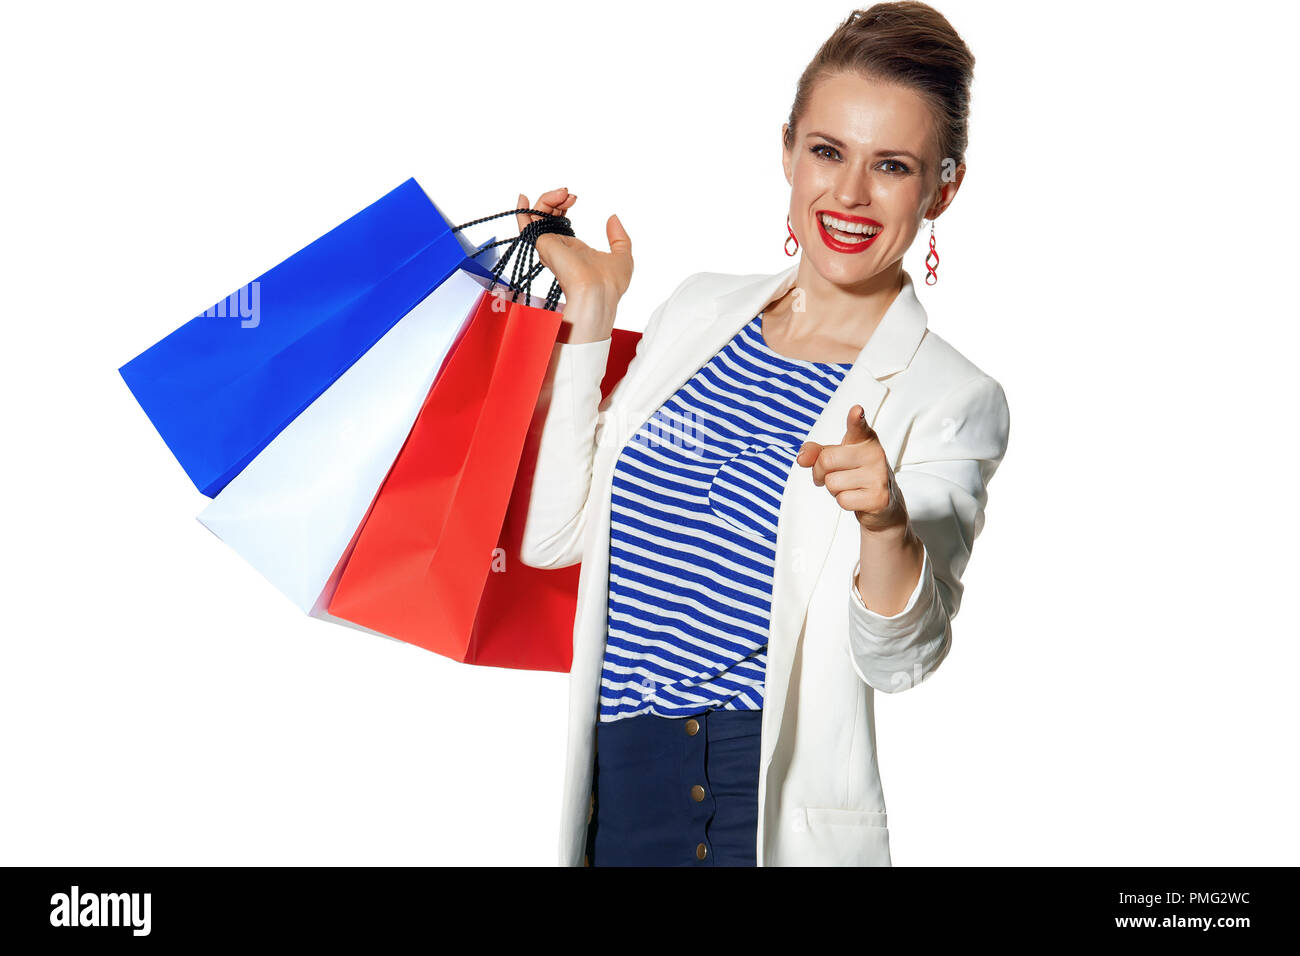 Lo Shopping di lusso. Il modo francese. Sorridendo moderna moda-monger in camicia bianca isolata su sfondo bianco con le borse della spesa nel colore a Foto Stock